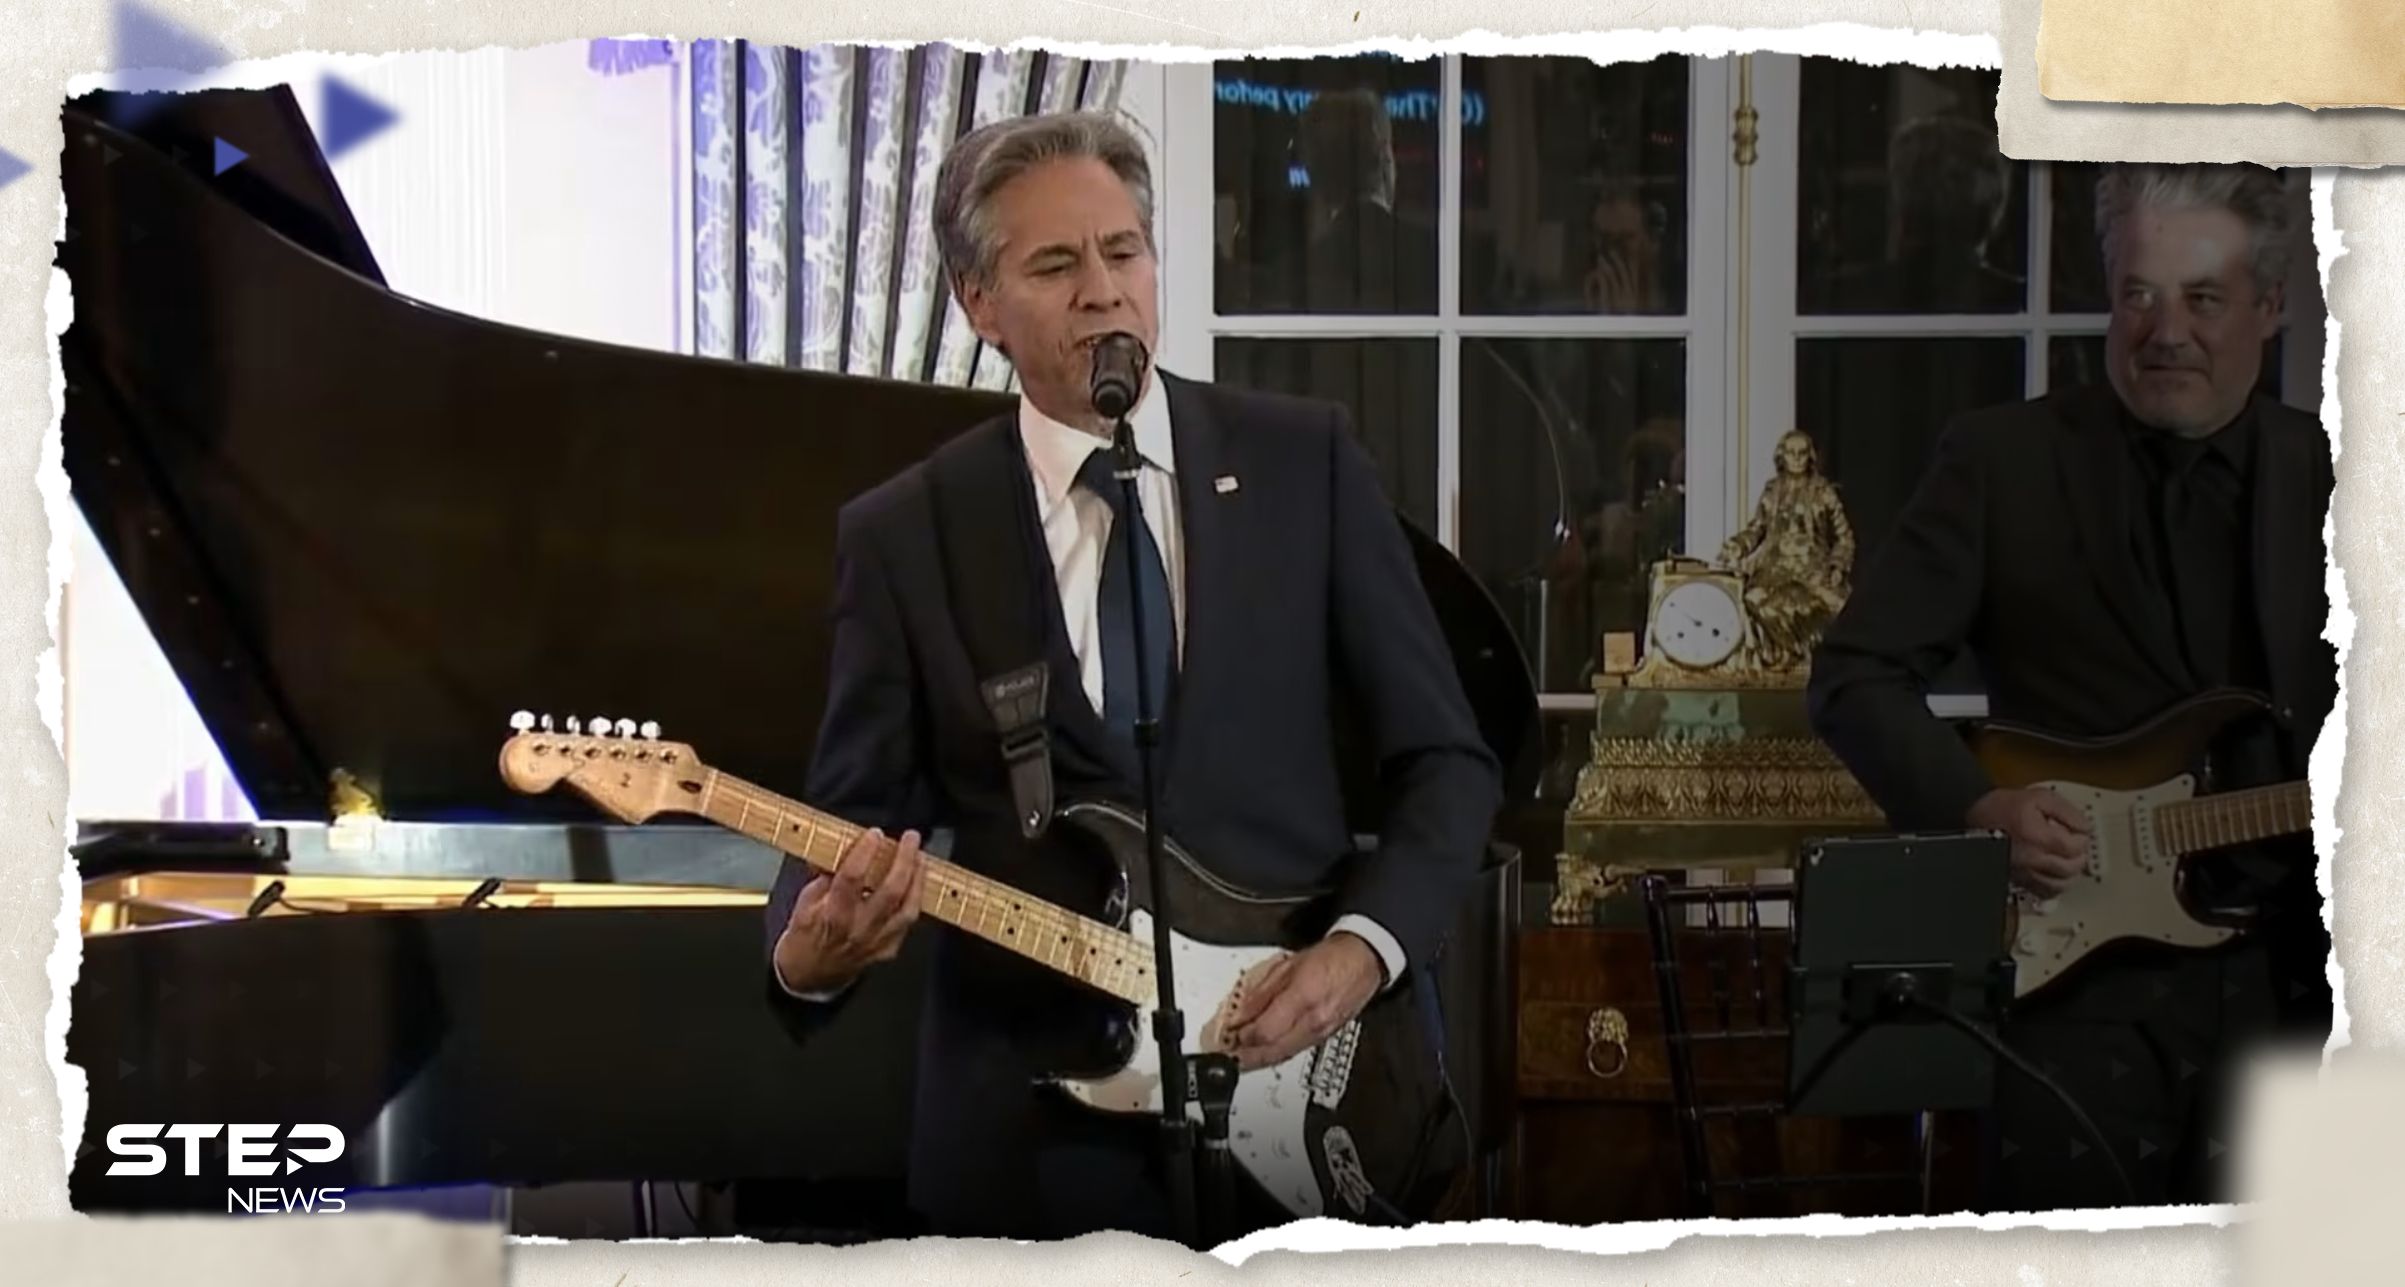 فيديو وزير الخارجية الأمريكي يغني ويعزف على أوتار دبلوماسية الموسيقى العالمية يُثير تفاعلاً